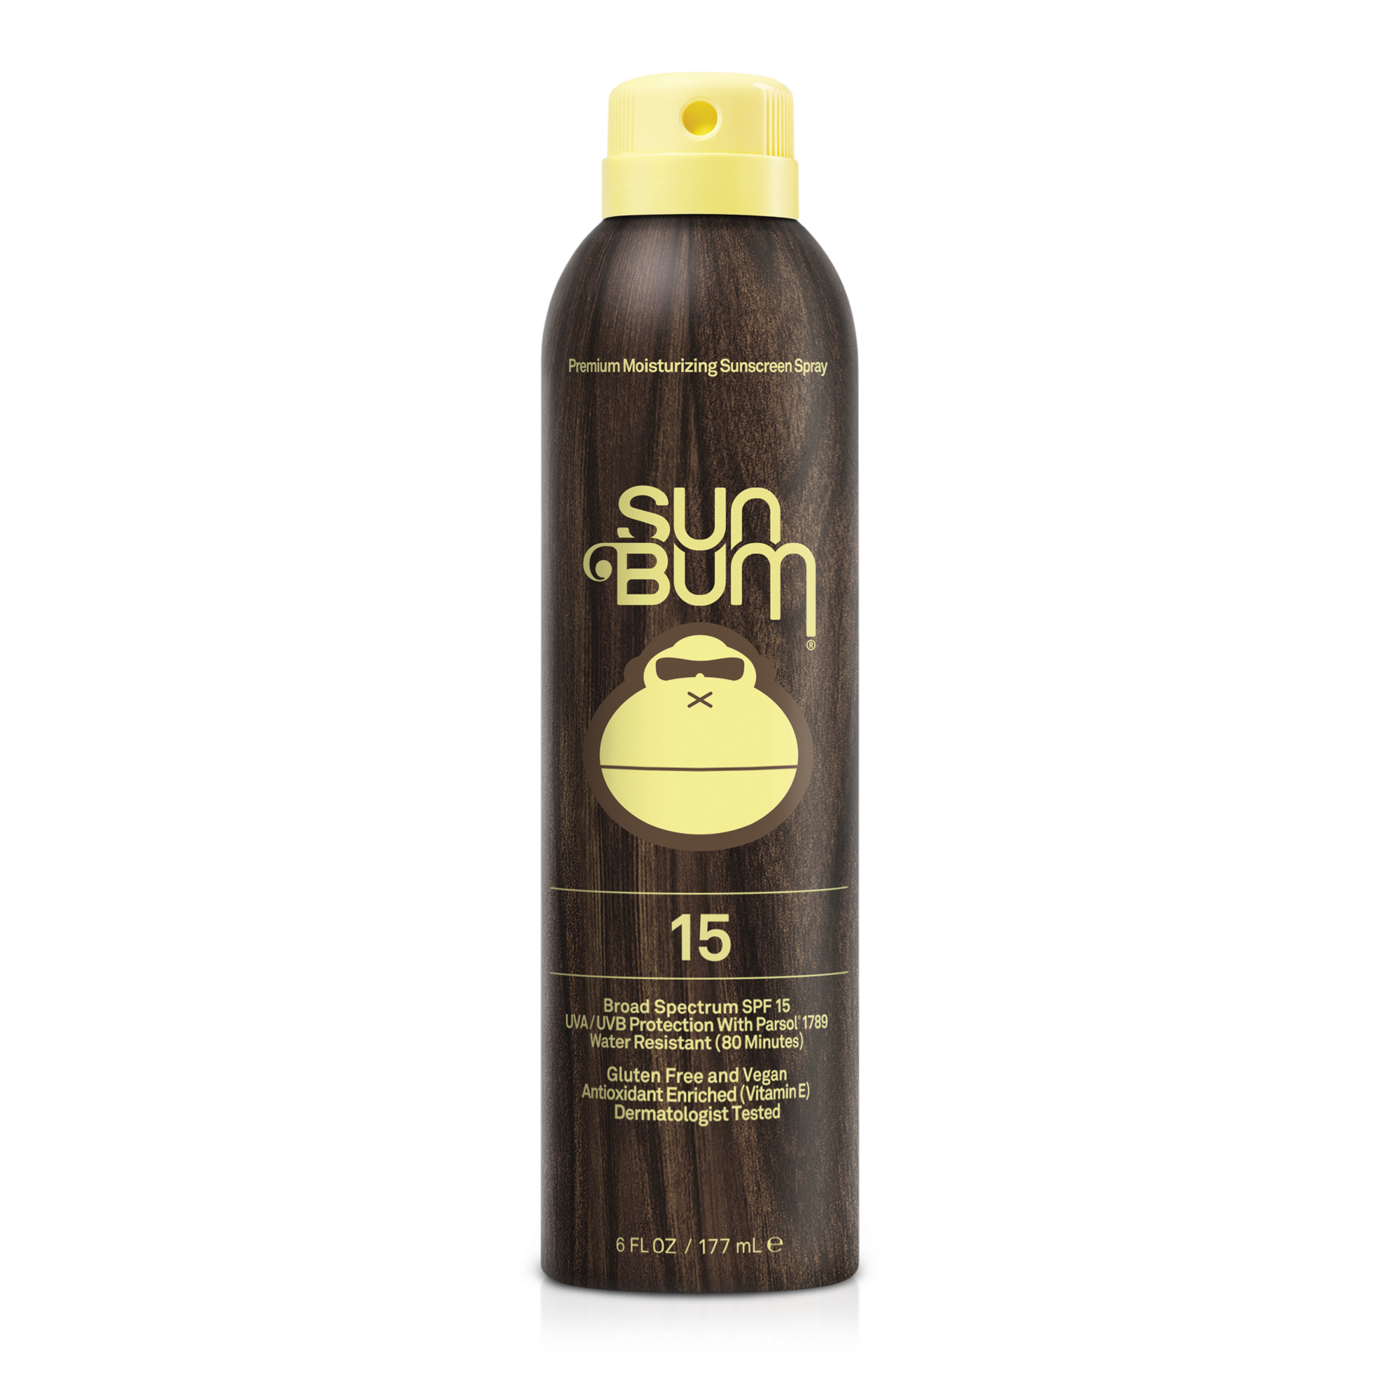 Sun Bum Sunscreen Spray 15 SPF